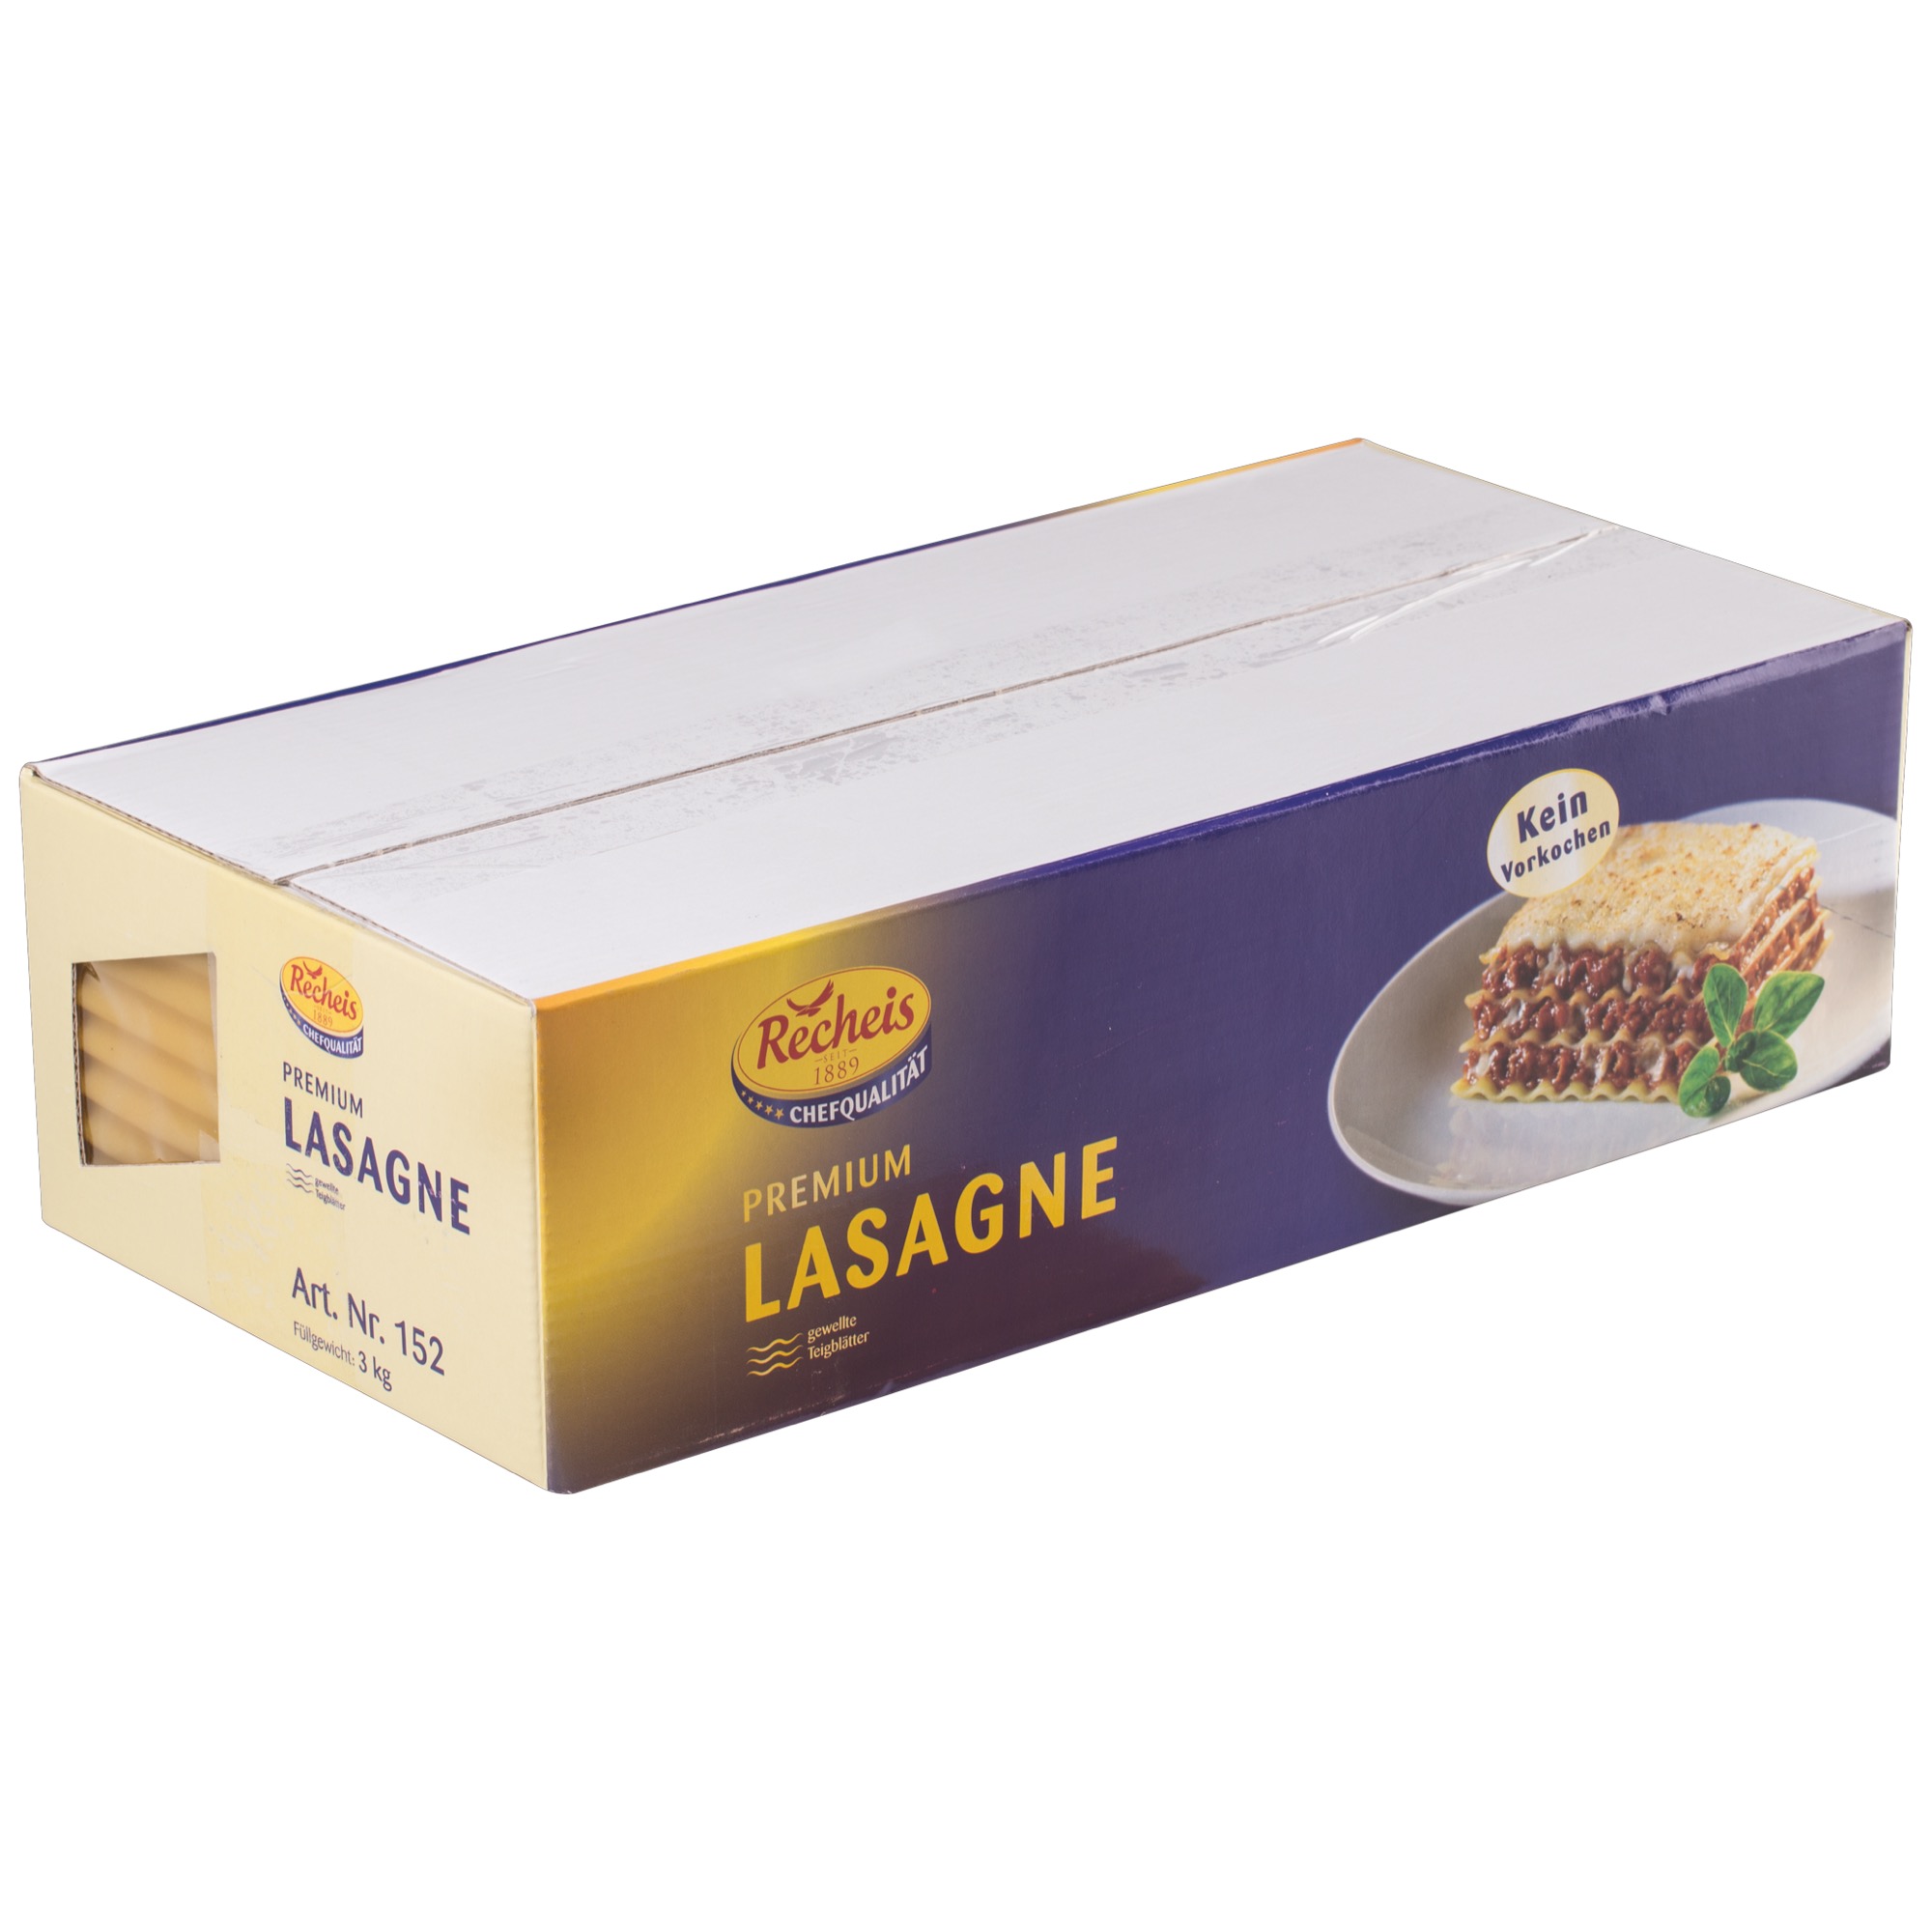 Recheis Lasagne 3kg, žlté